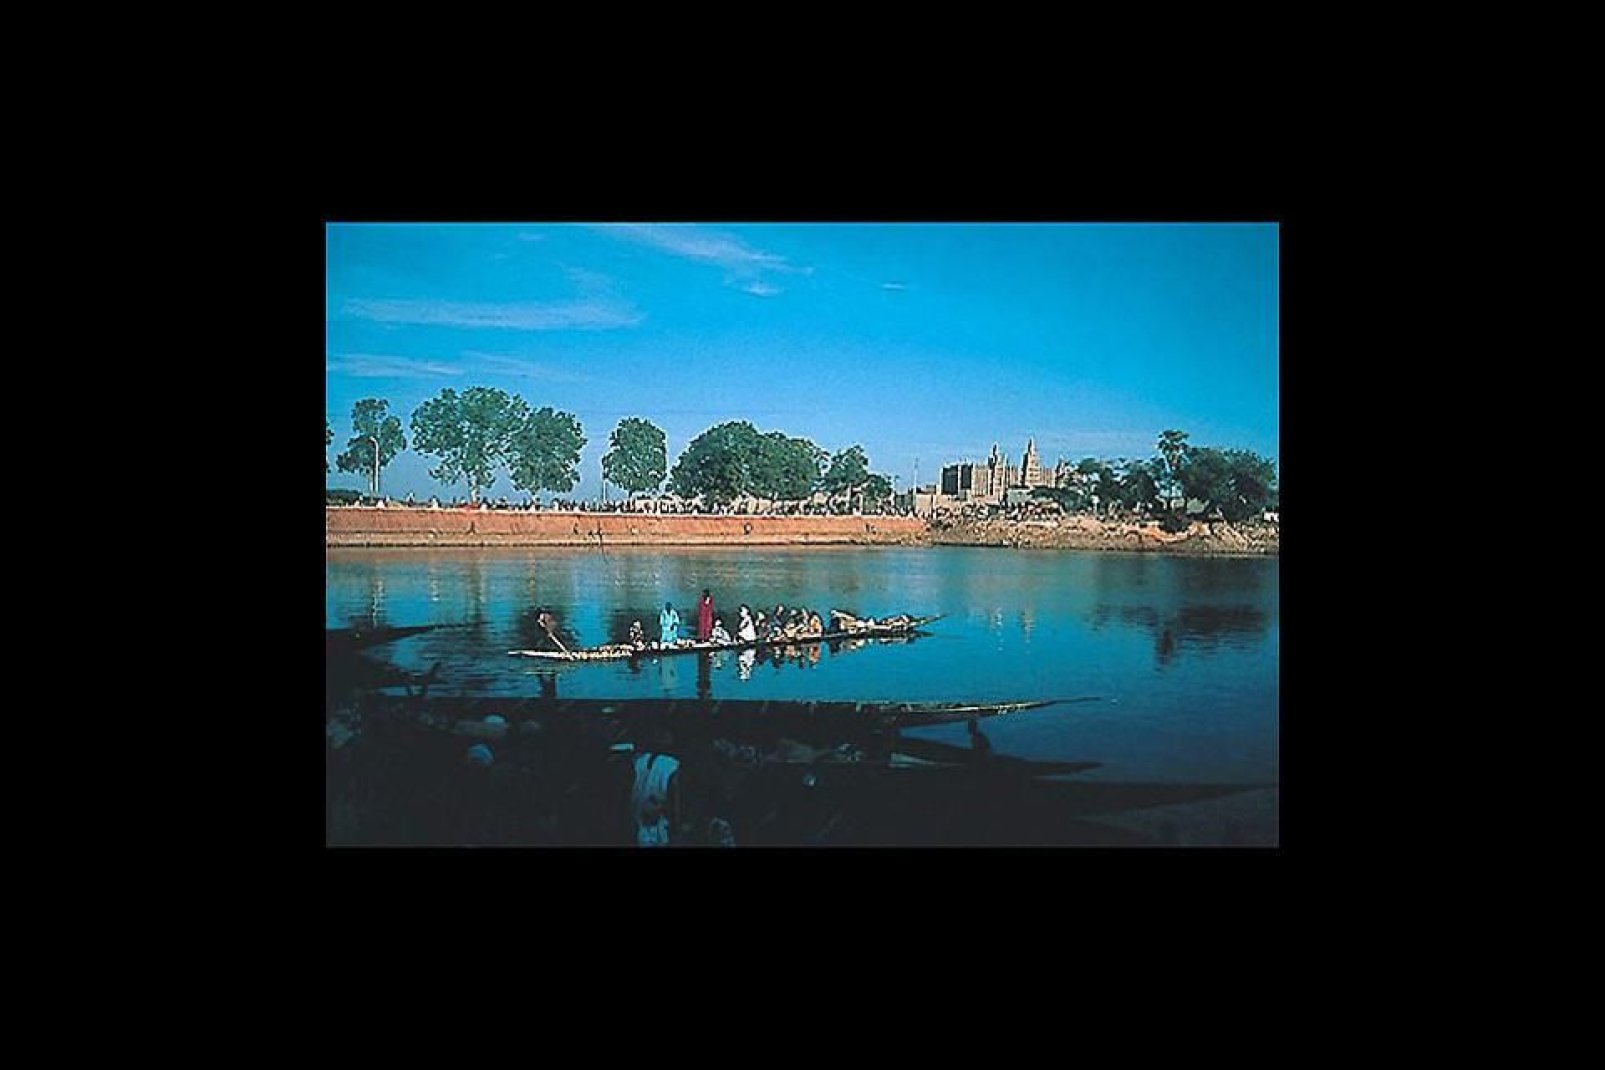 Gao, la ville des Touaregs et des Songhaï, se situe sur le fleuve Niger et possède un patrimoine archéologique extraordinaire.